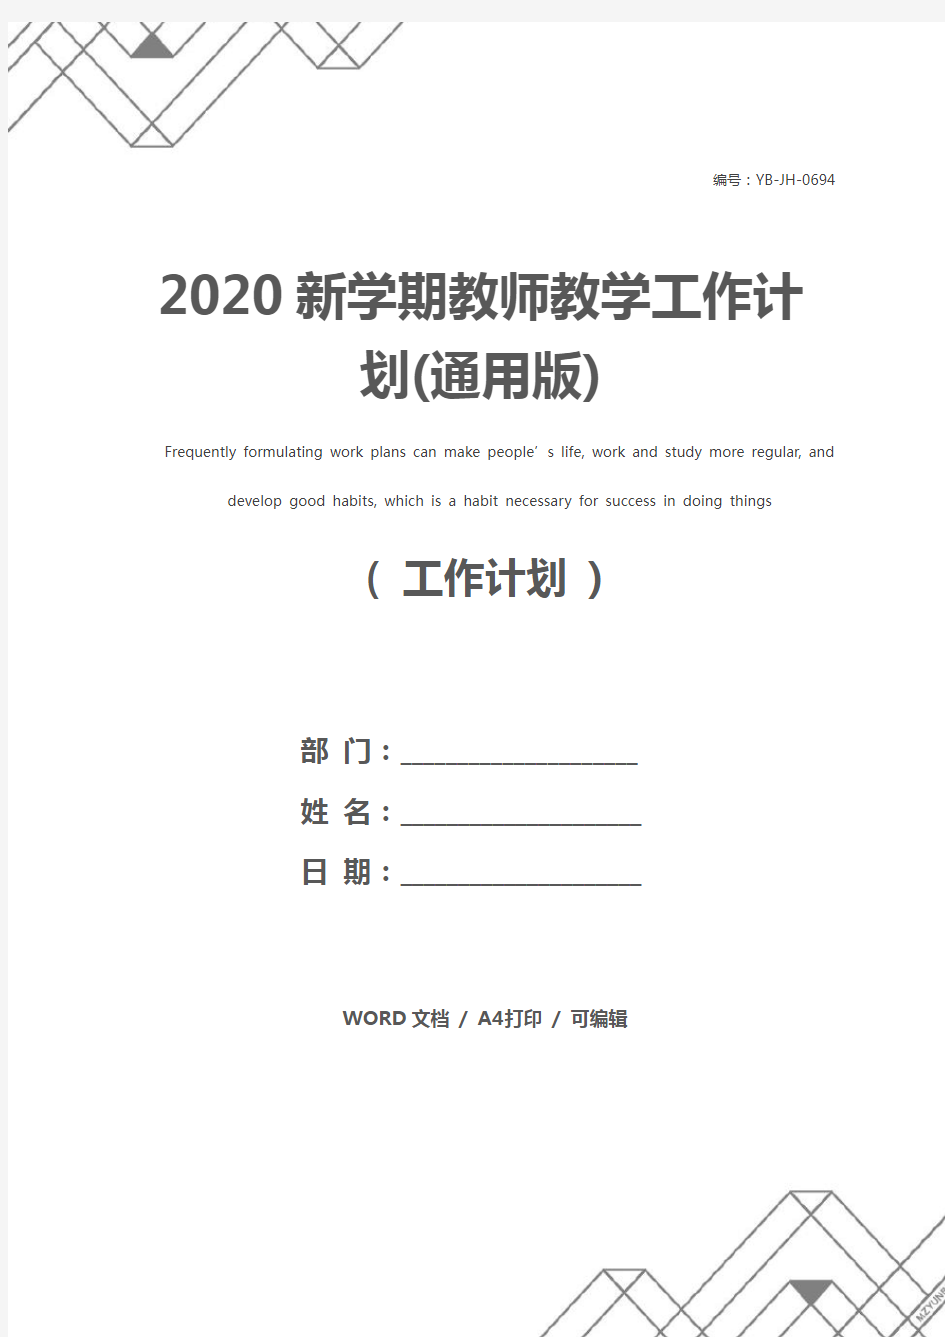 2020新学期教师教学工作计划(通用版)